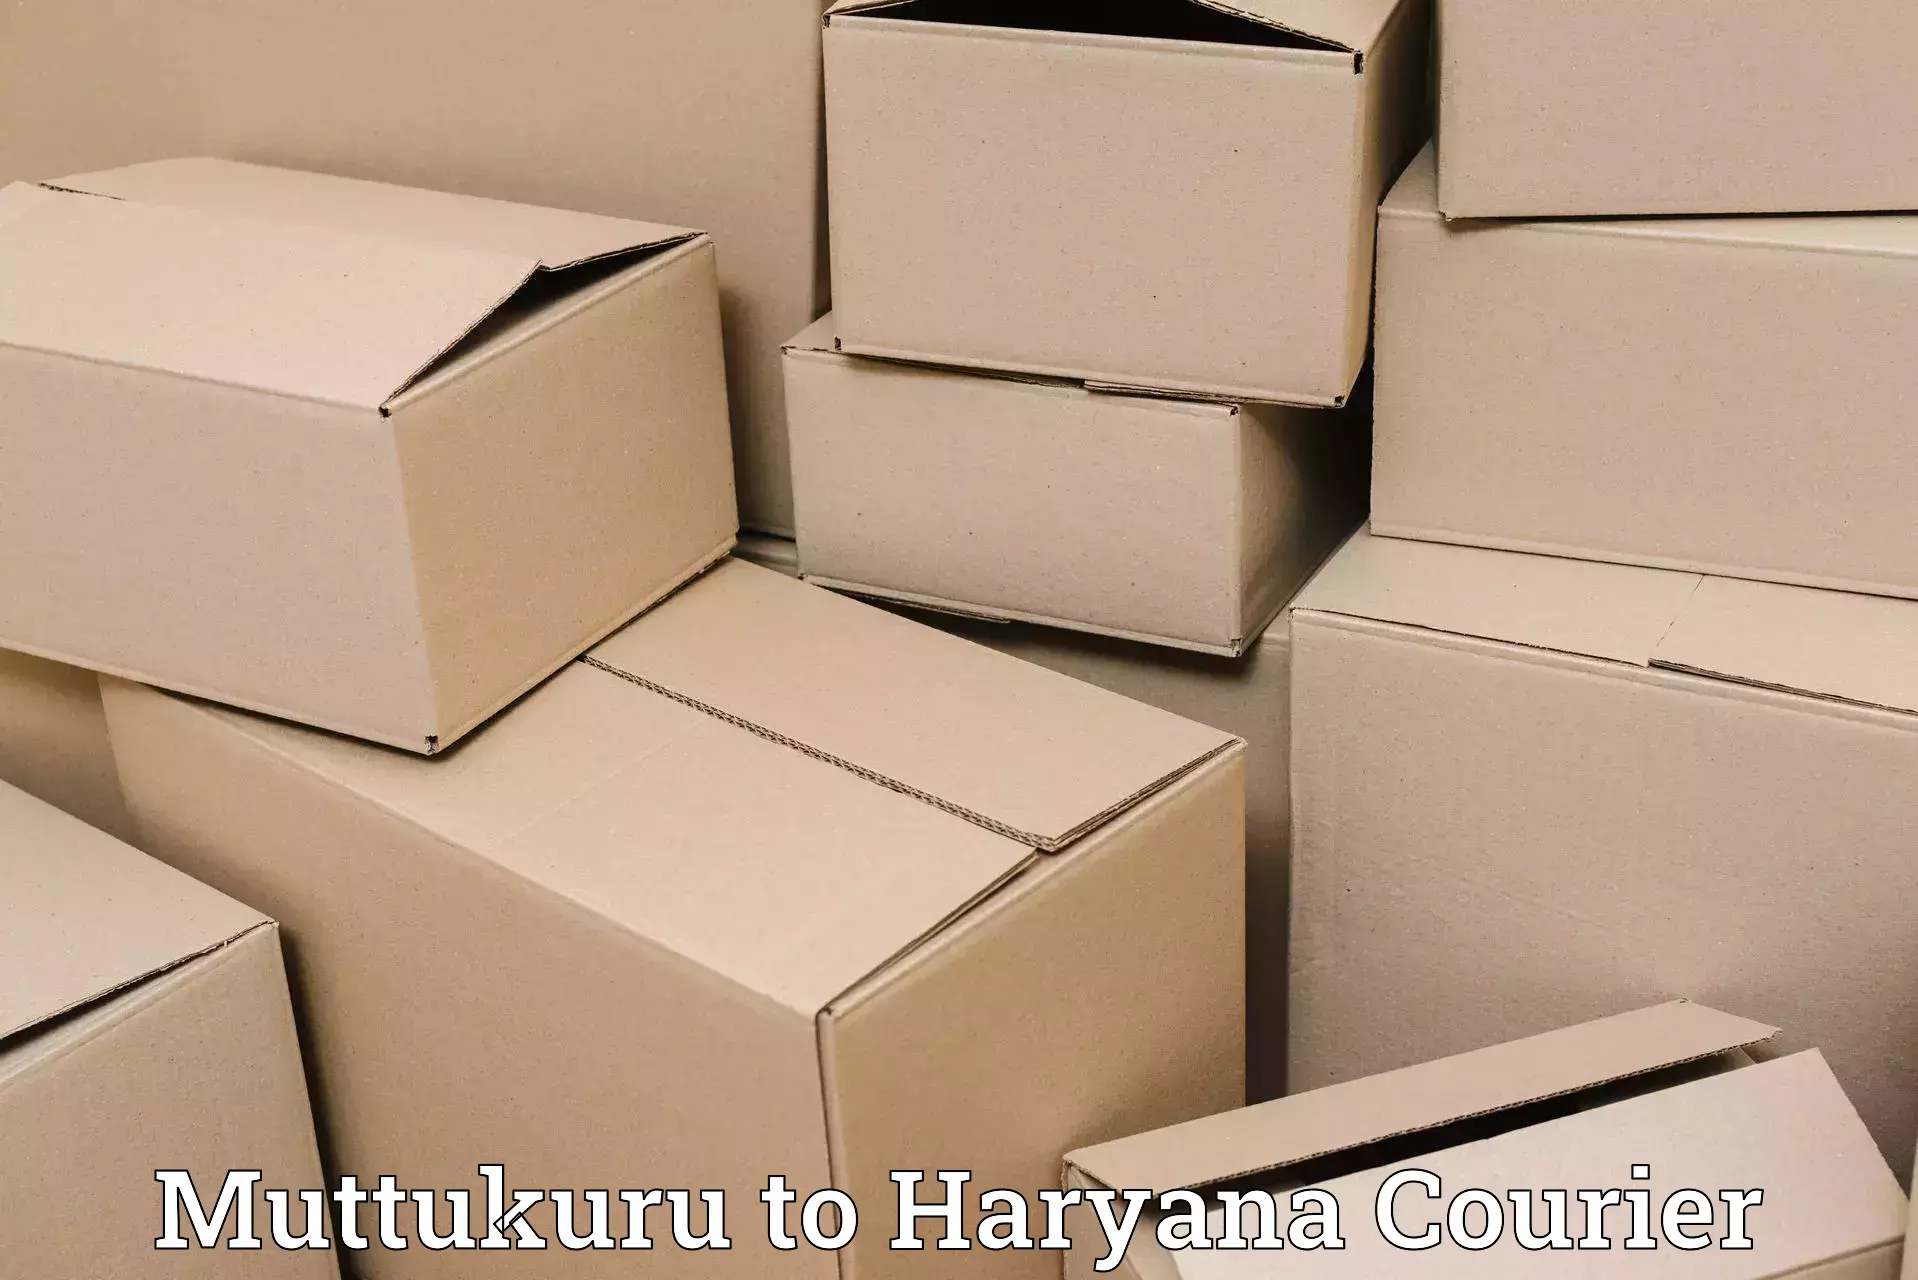 Efficient cargo handling Muttukuru to Samalkha